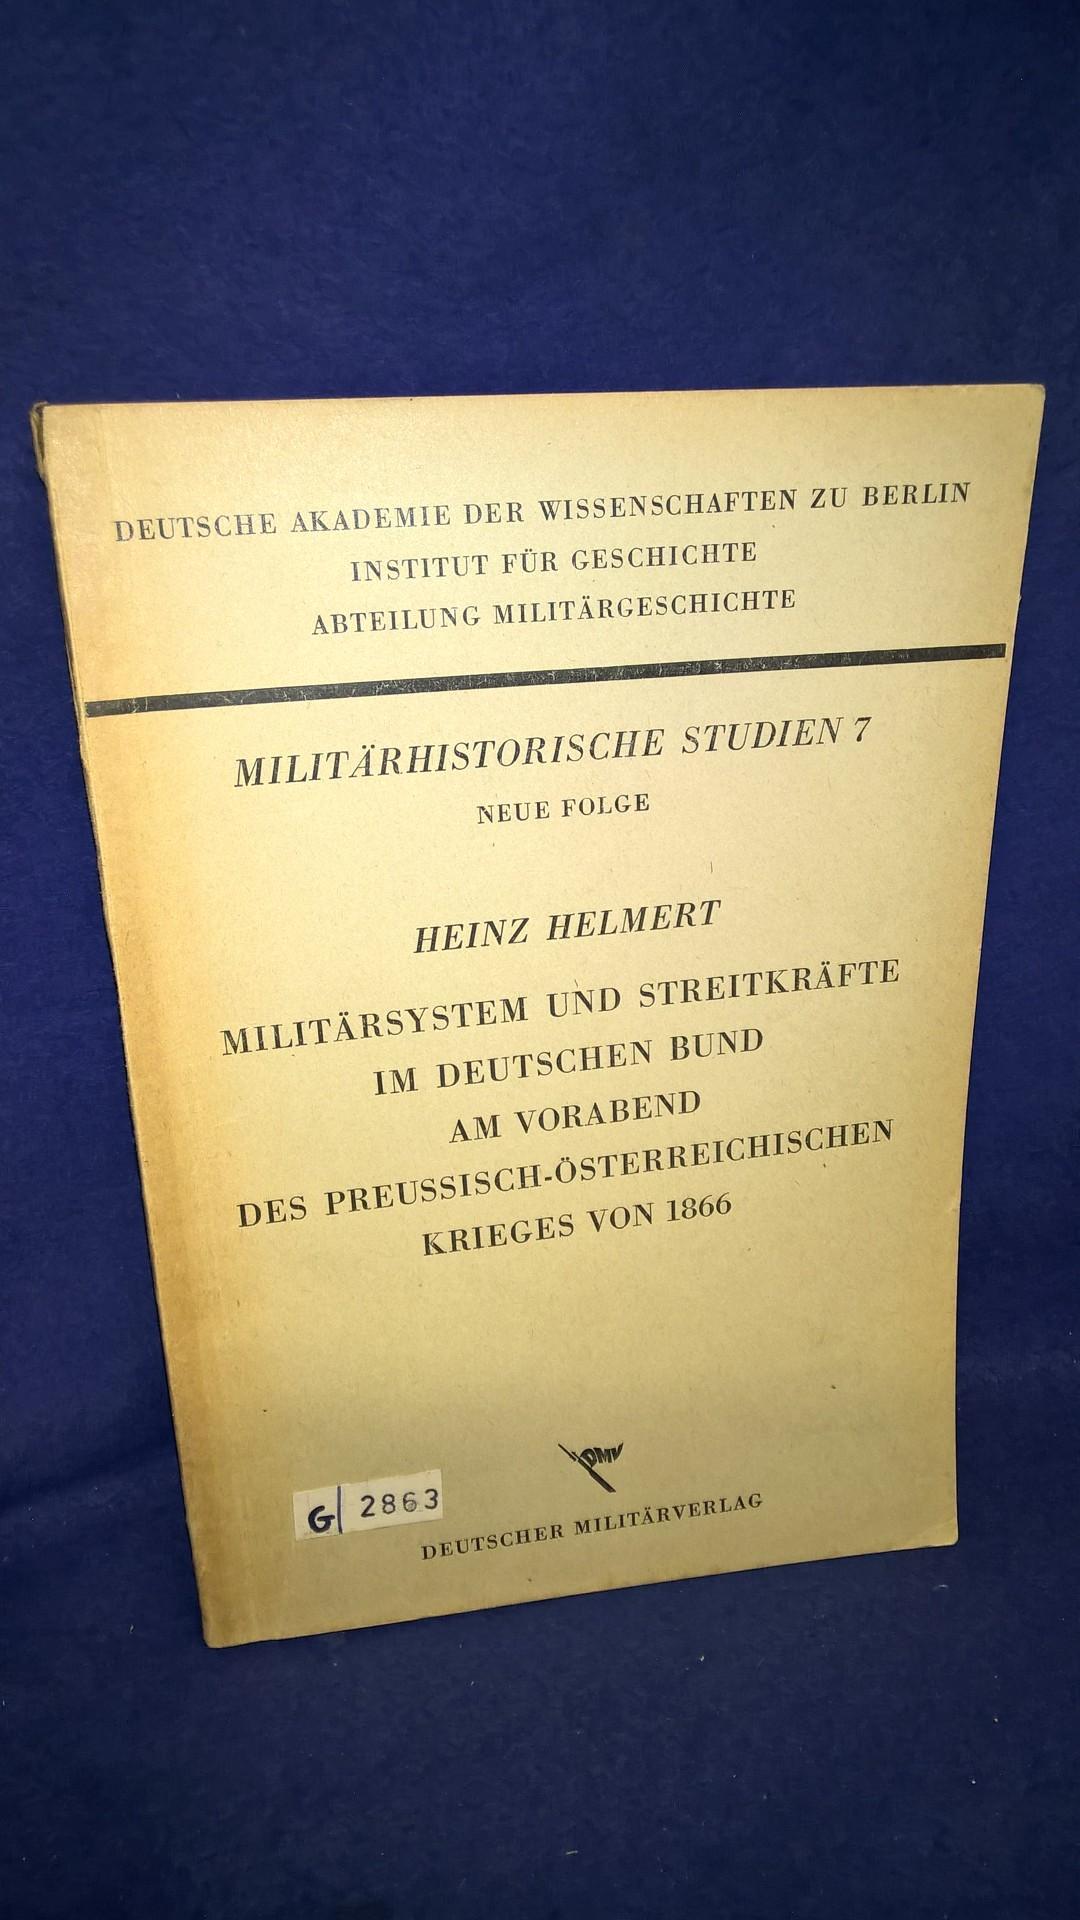 Militärsystem und Streitkräfte im Deutschen Bund am Vorabend des preußisch - österreichischen Krieges von 1866.